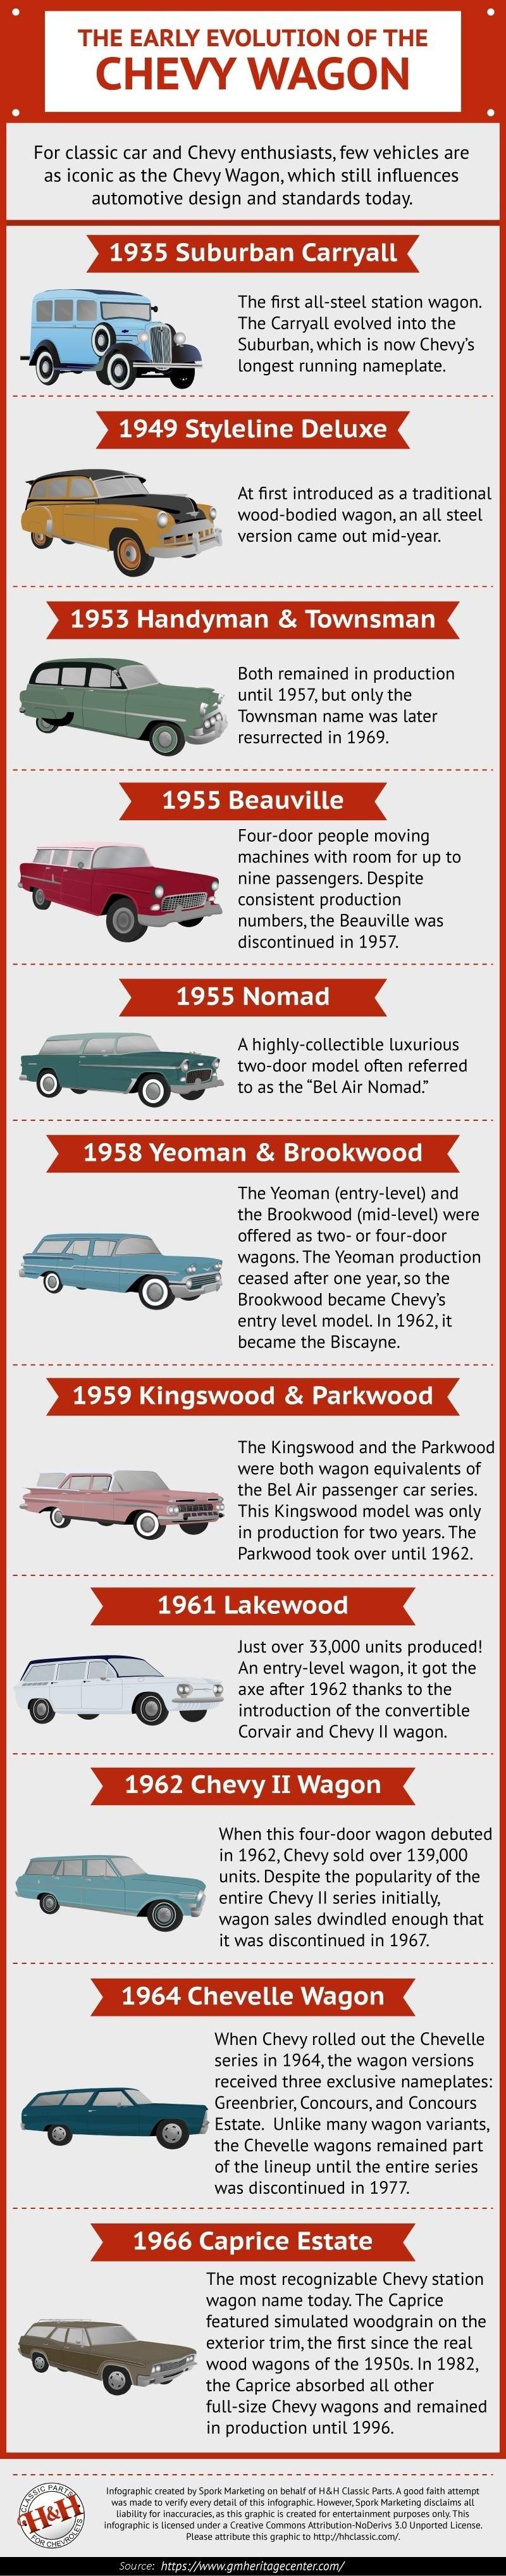 Eine kurze Geschichte des klassischen Chevrolet Kombis